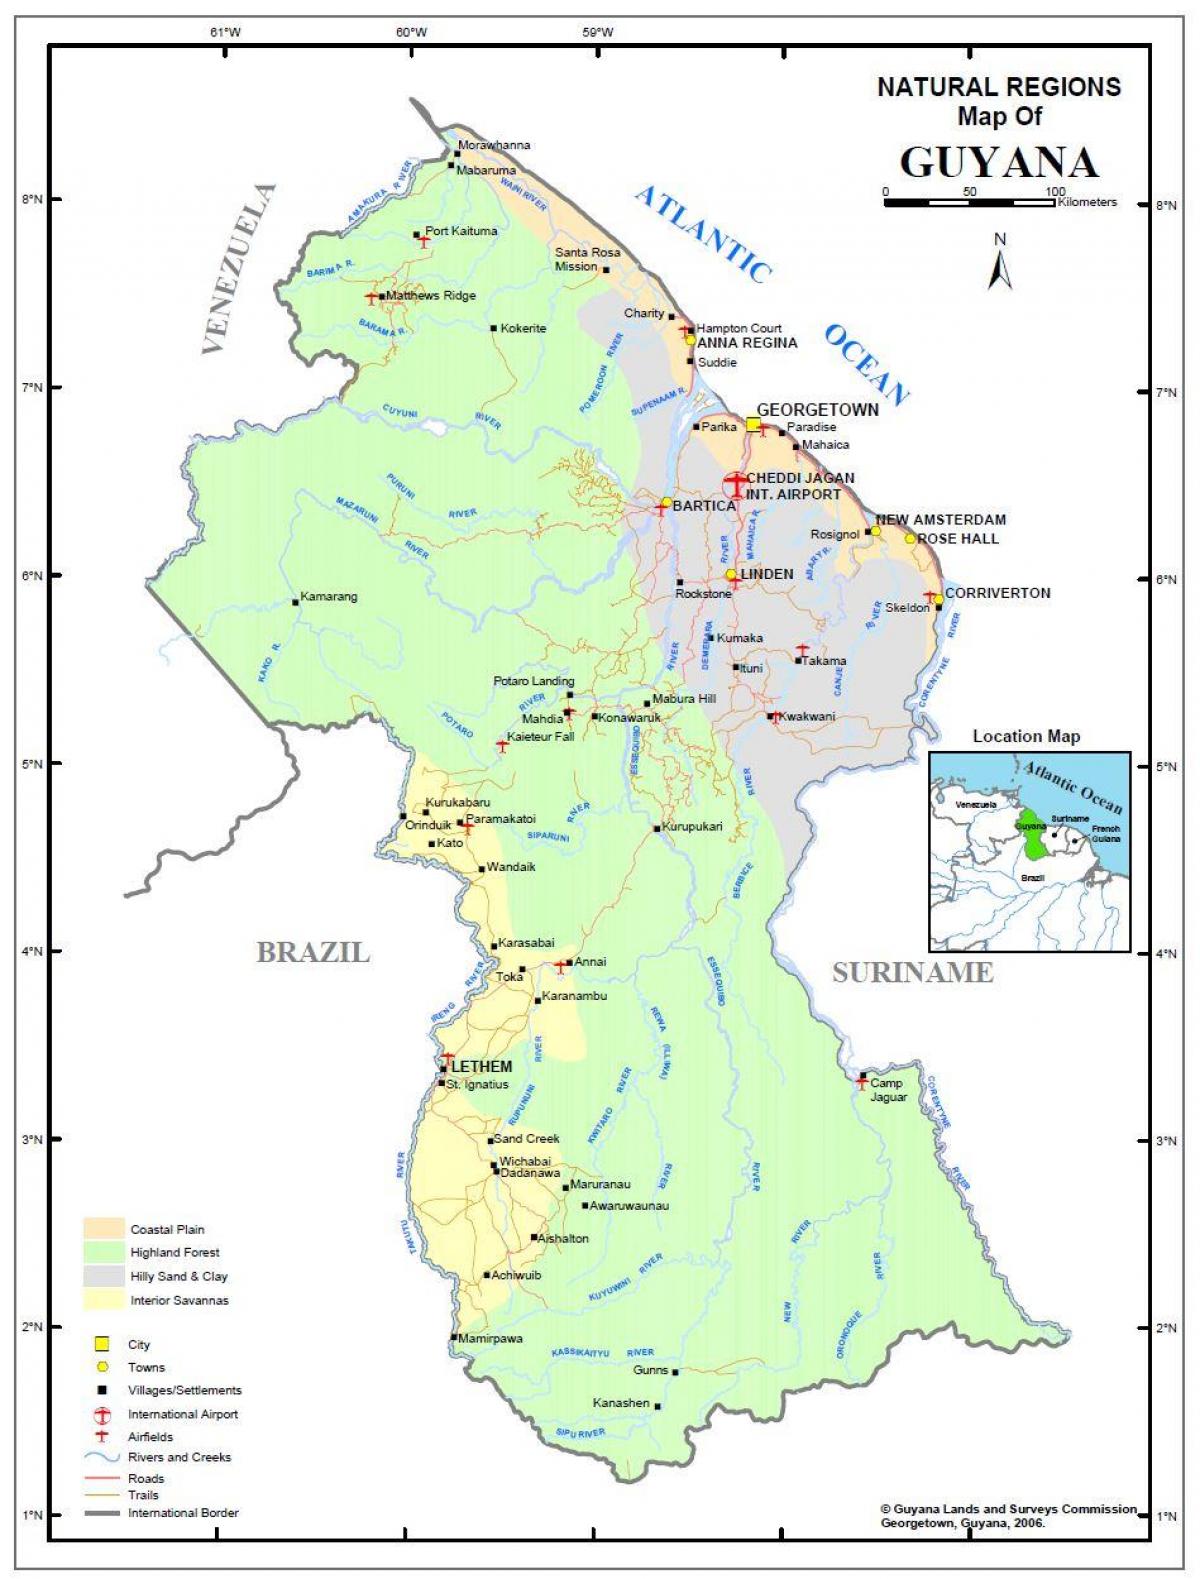 karta Gvajana, pokazujući prirodnih resursa